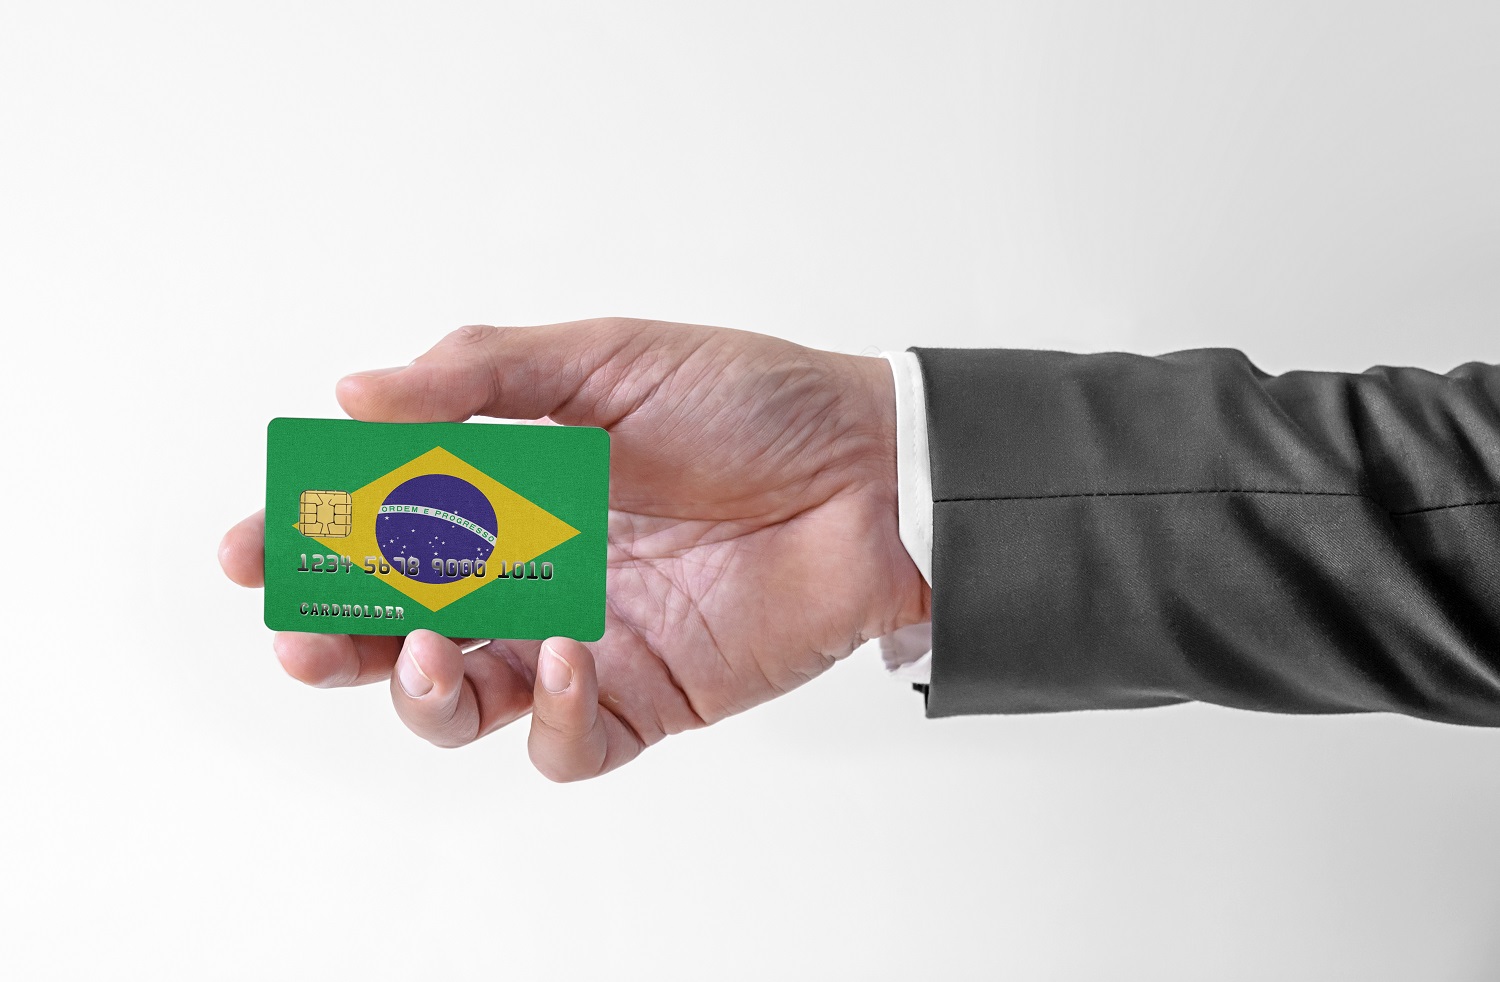 Bir adamın elinde Brezilya bayrağının renkleriyle süslenmiş plastik bir kredi kartı var.